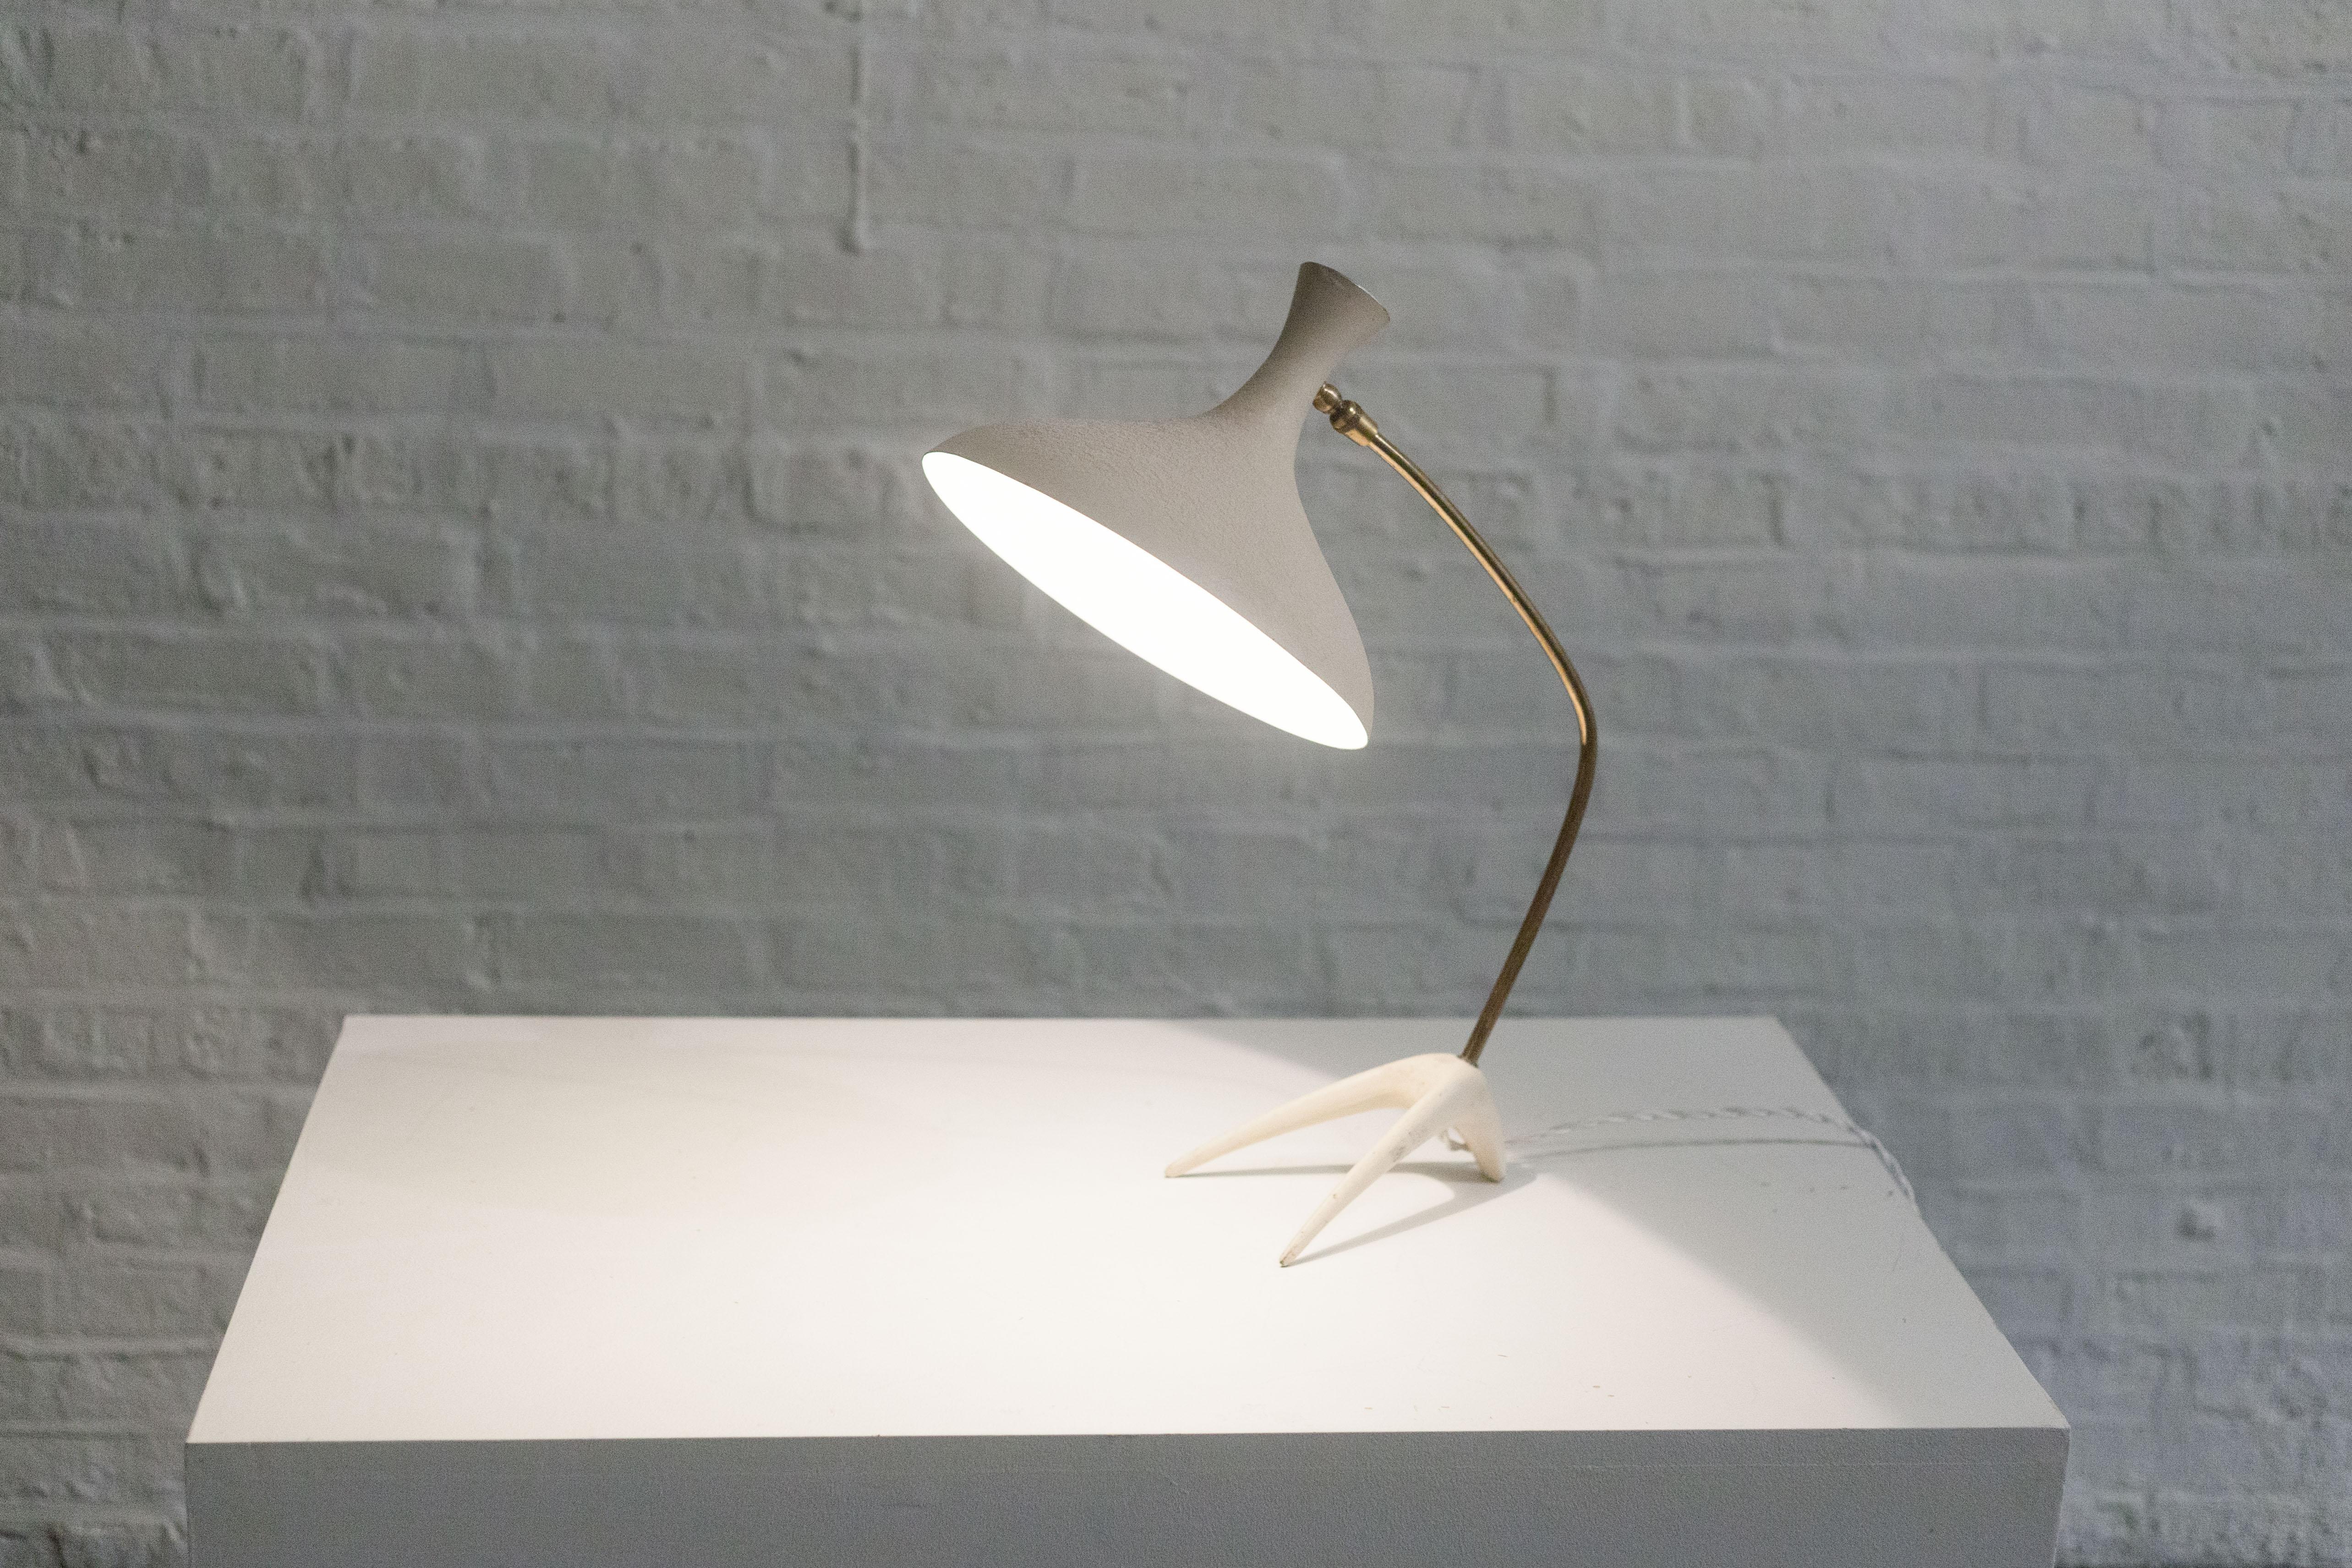 Diese aus Deutschland importierte Lampe aus der Mitte der 1950er Jahre wurde lange Zeit Louis Kalff zugeschrieben und ist nun als Cosack Leuchten bekannt. 

Der weiße Metallschirm mit seiner biomorphen, organischen Form hat eine engelsgleiche